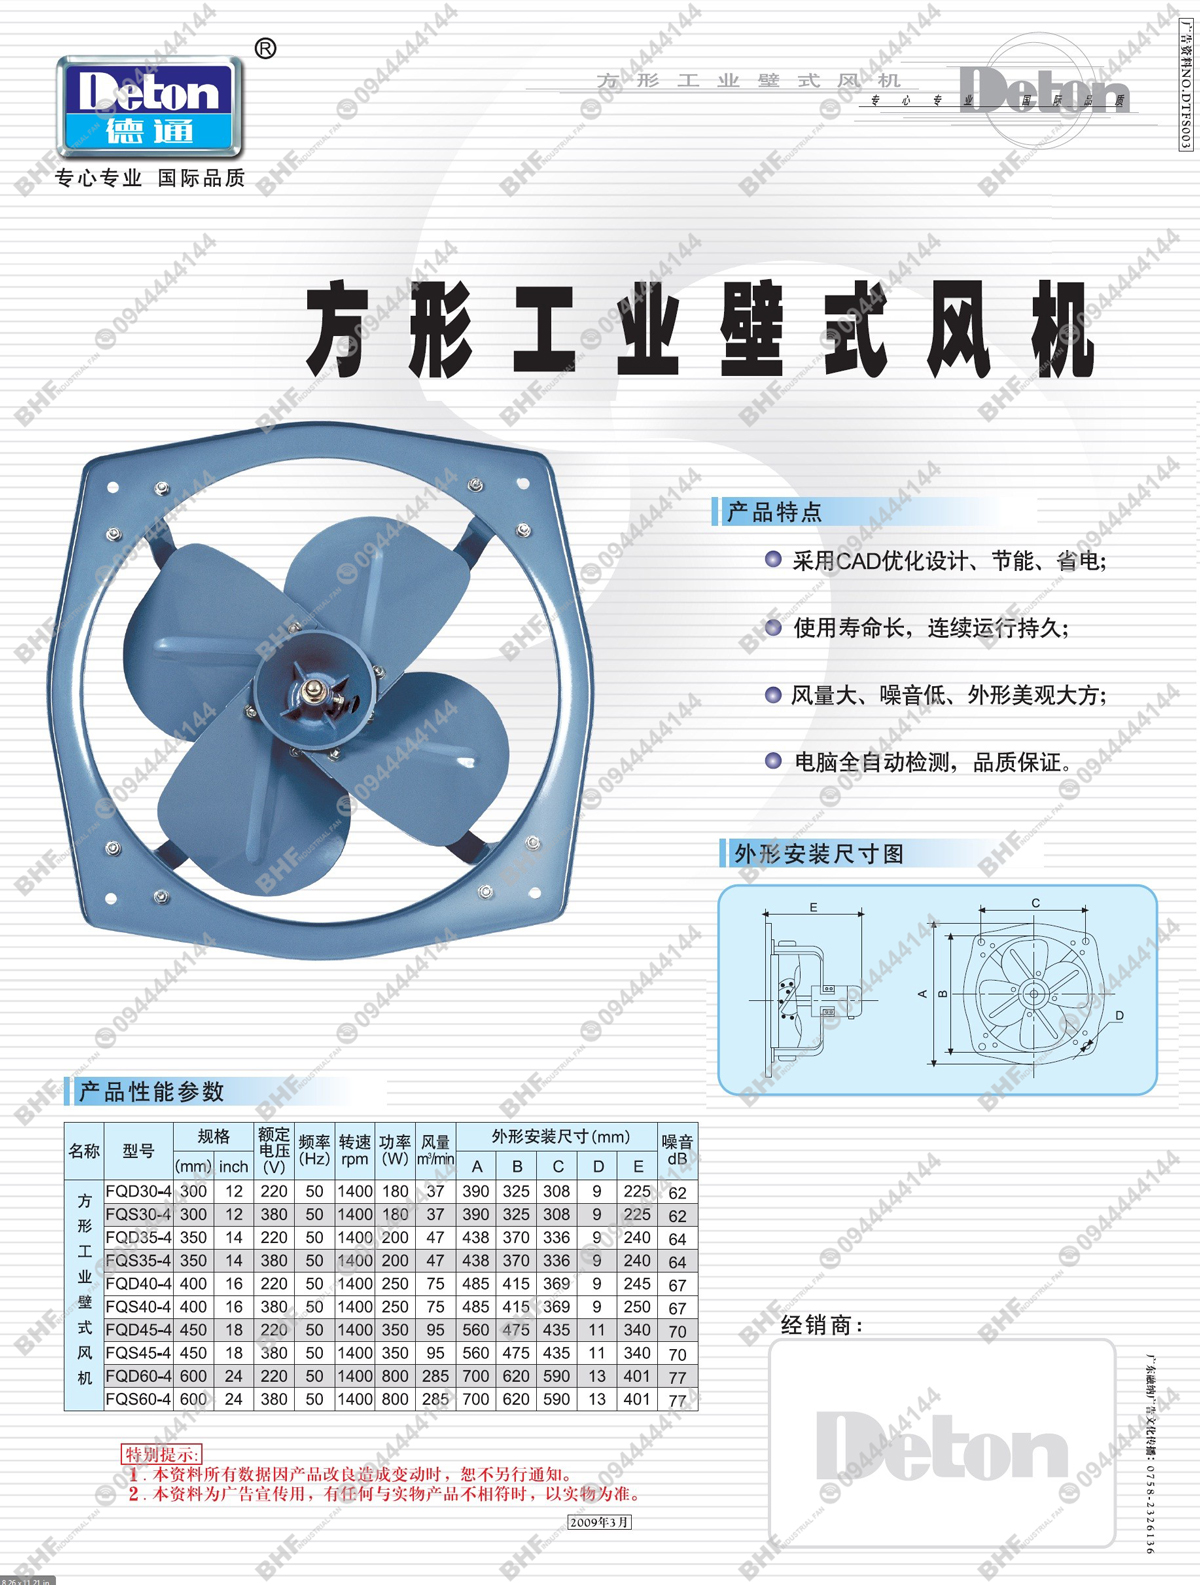 Catalogue quạt thông gió vuông Deton FQD-4